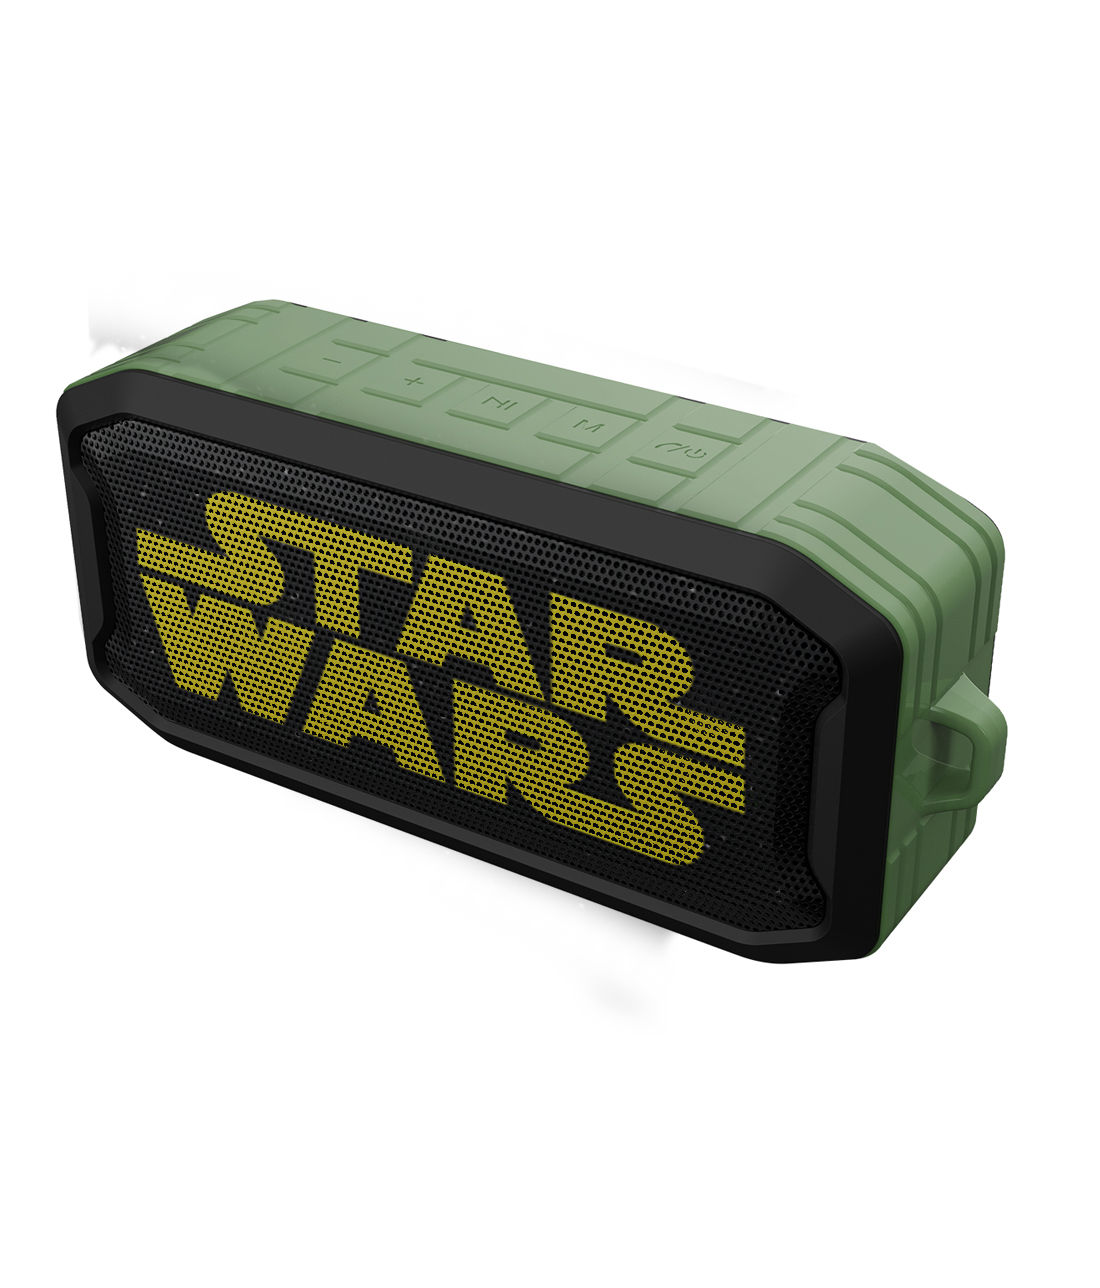 Buy Logo Star Wars - Macmerise Nuke Bluetooth Speaker Speakers Online